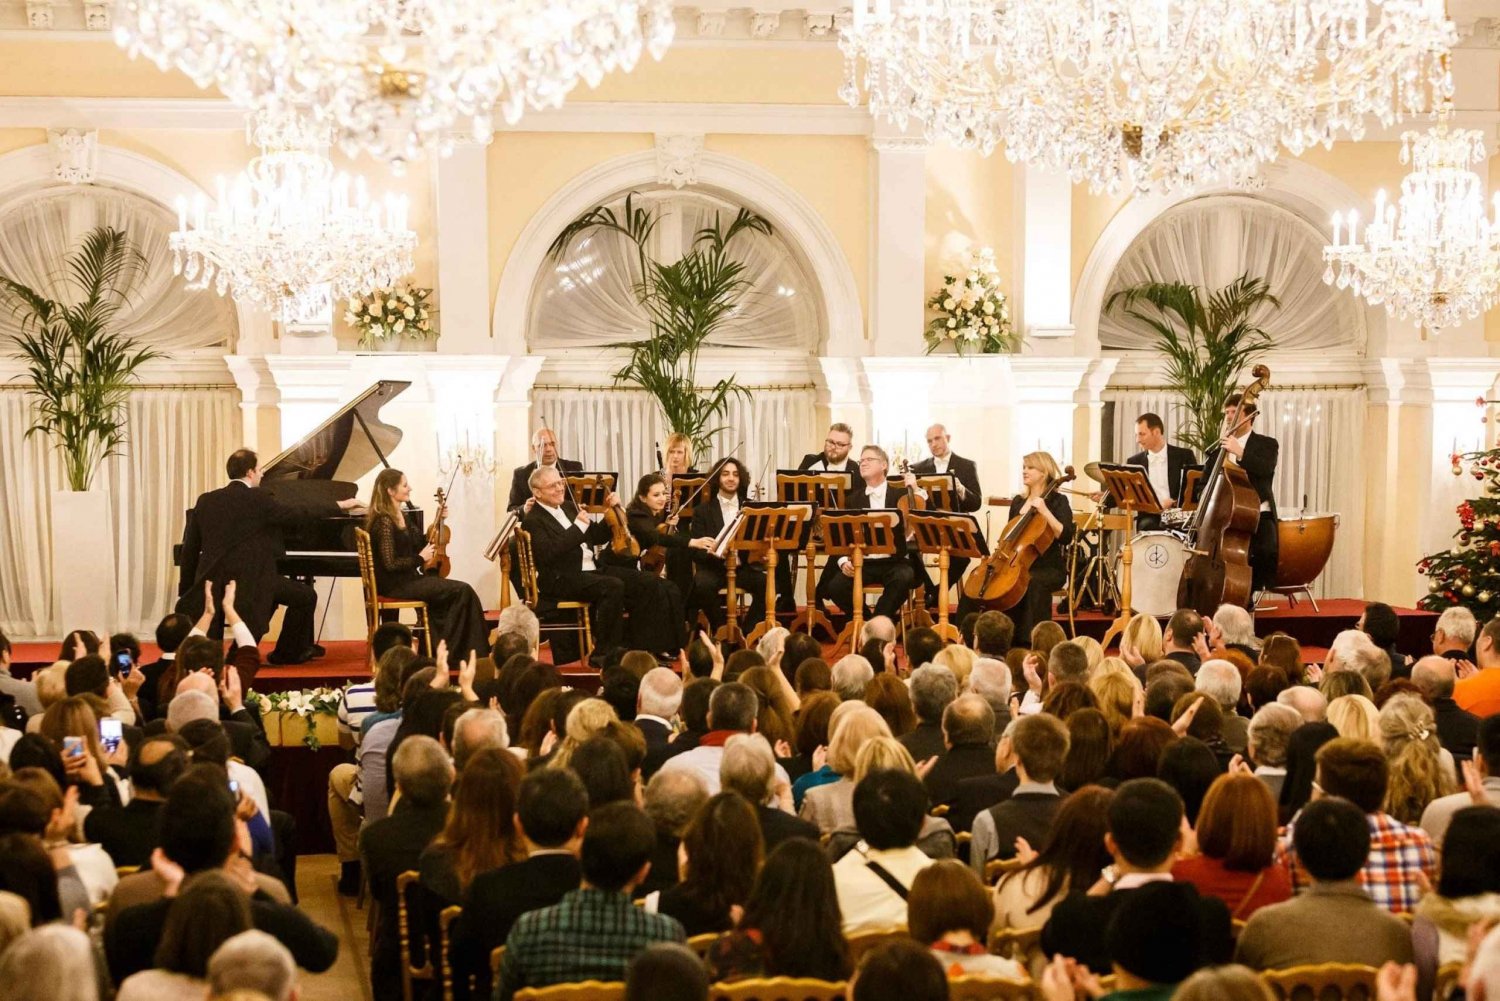 Wien: Nyttårskonsert med Strauss og Mozart i Kursalon på nyttårsdagen